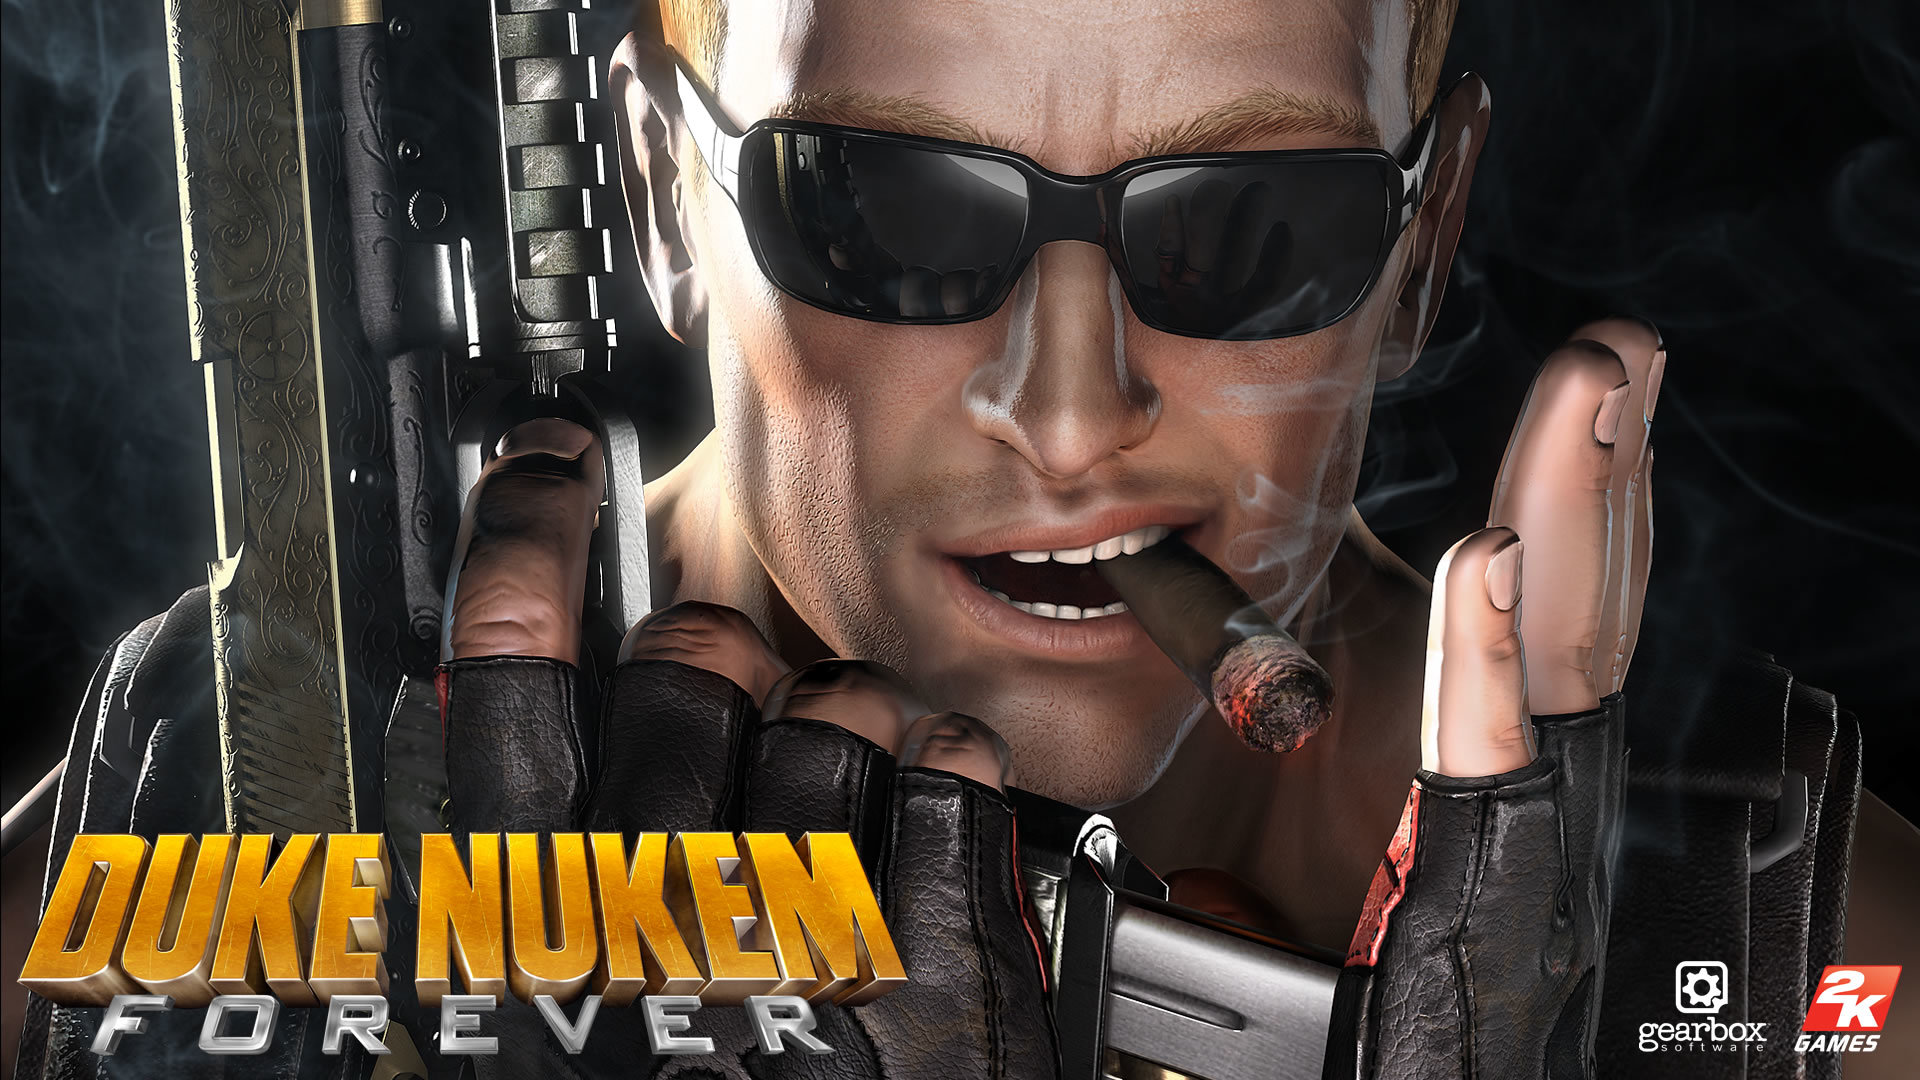 Download full hd 1080p Duke Nukem Forever PC wallpaper ID:104972 for free